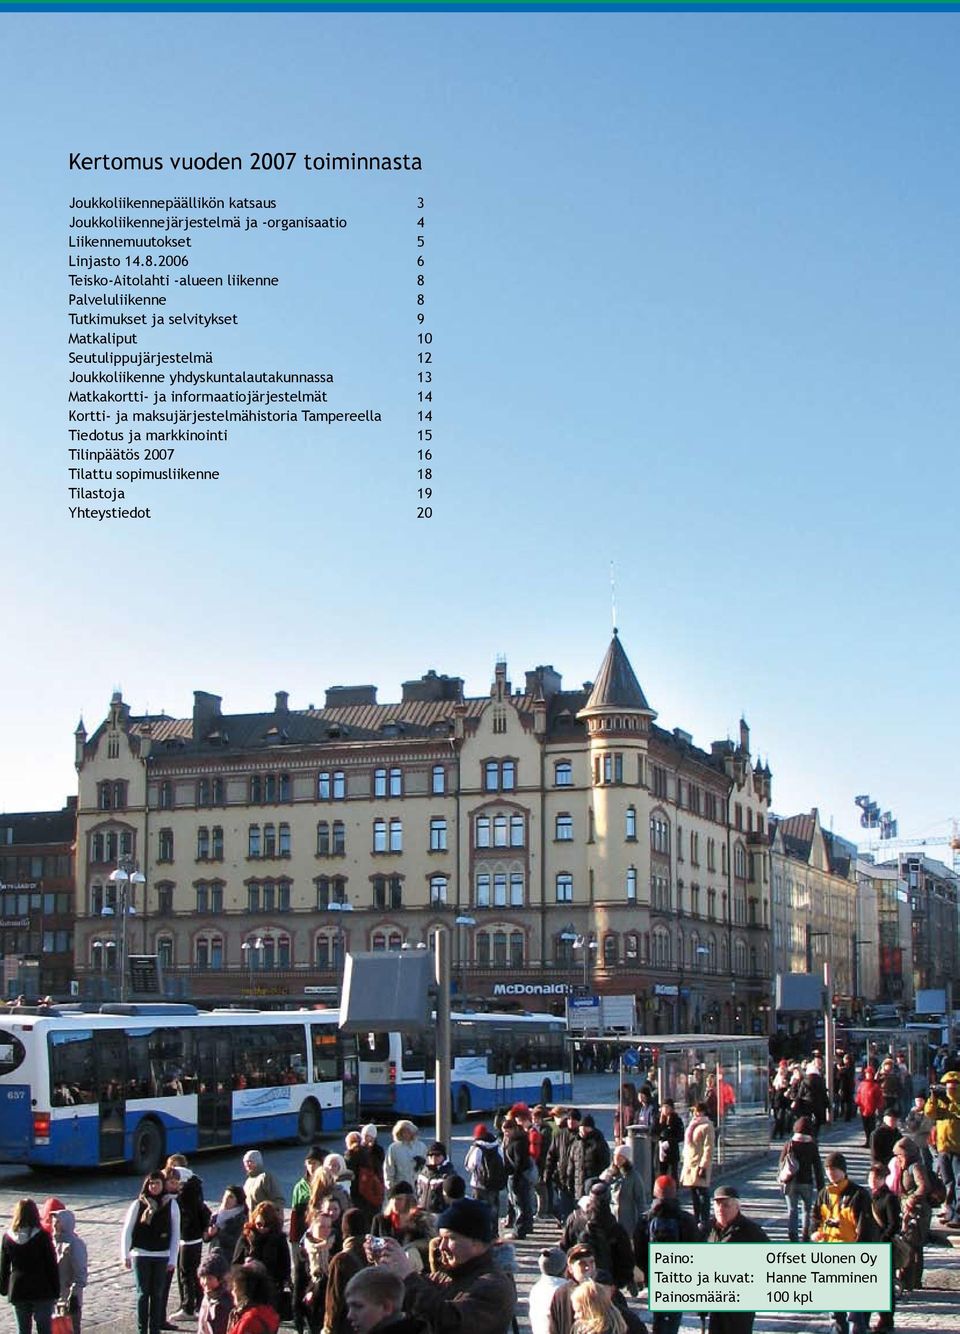 yhdyskuntalautakunnassa 13 Matkakortti- ja informaatiojärjestelmät 14 Kortti- ja maksujärjestelmähistoria Tampereella 14 Tiedotus ja markkinointi